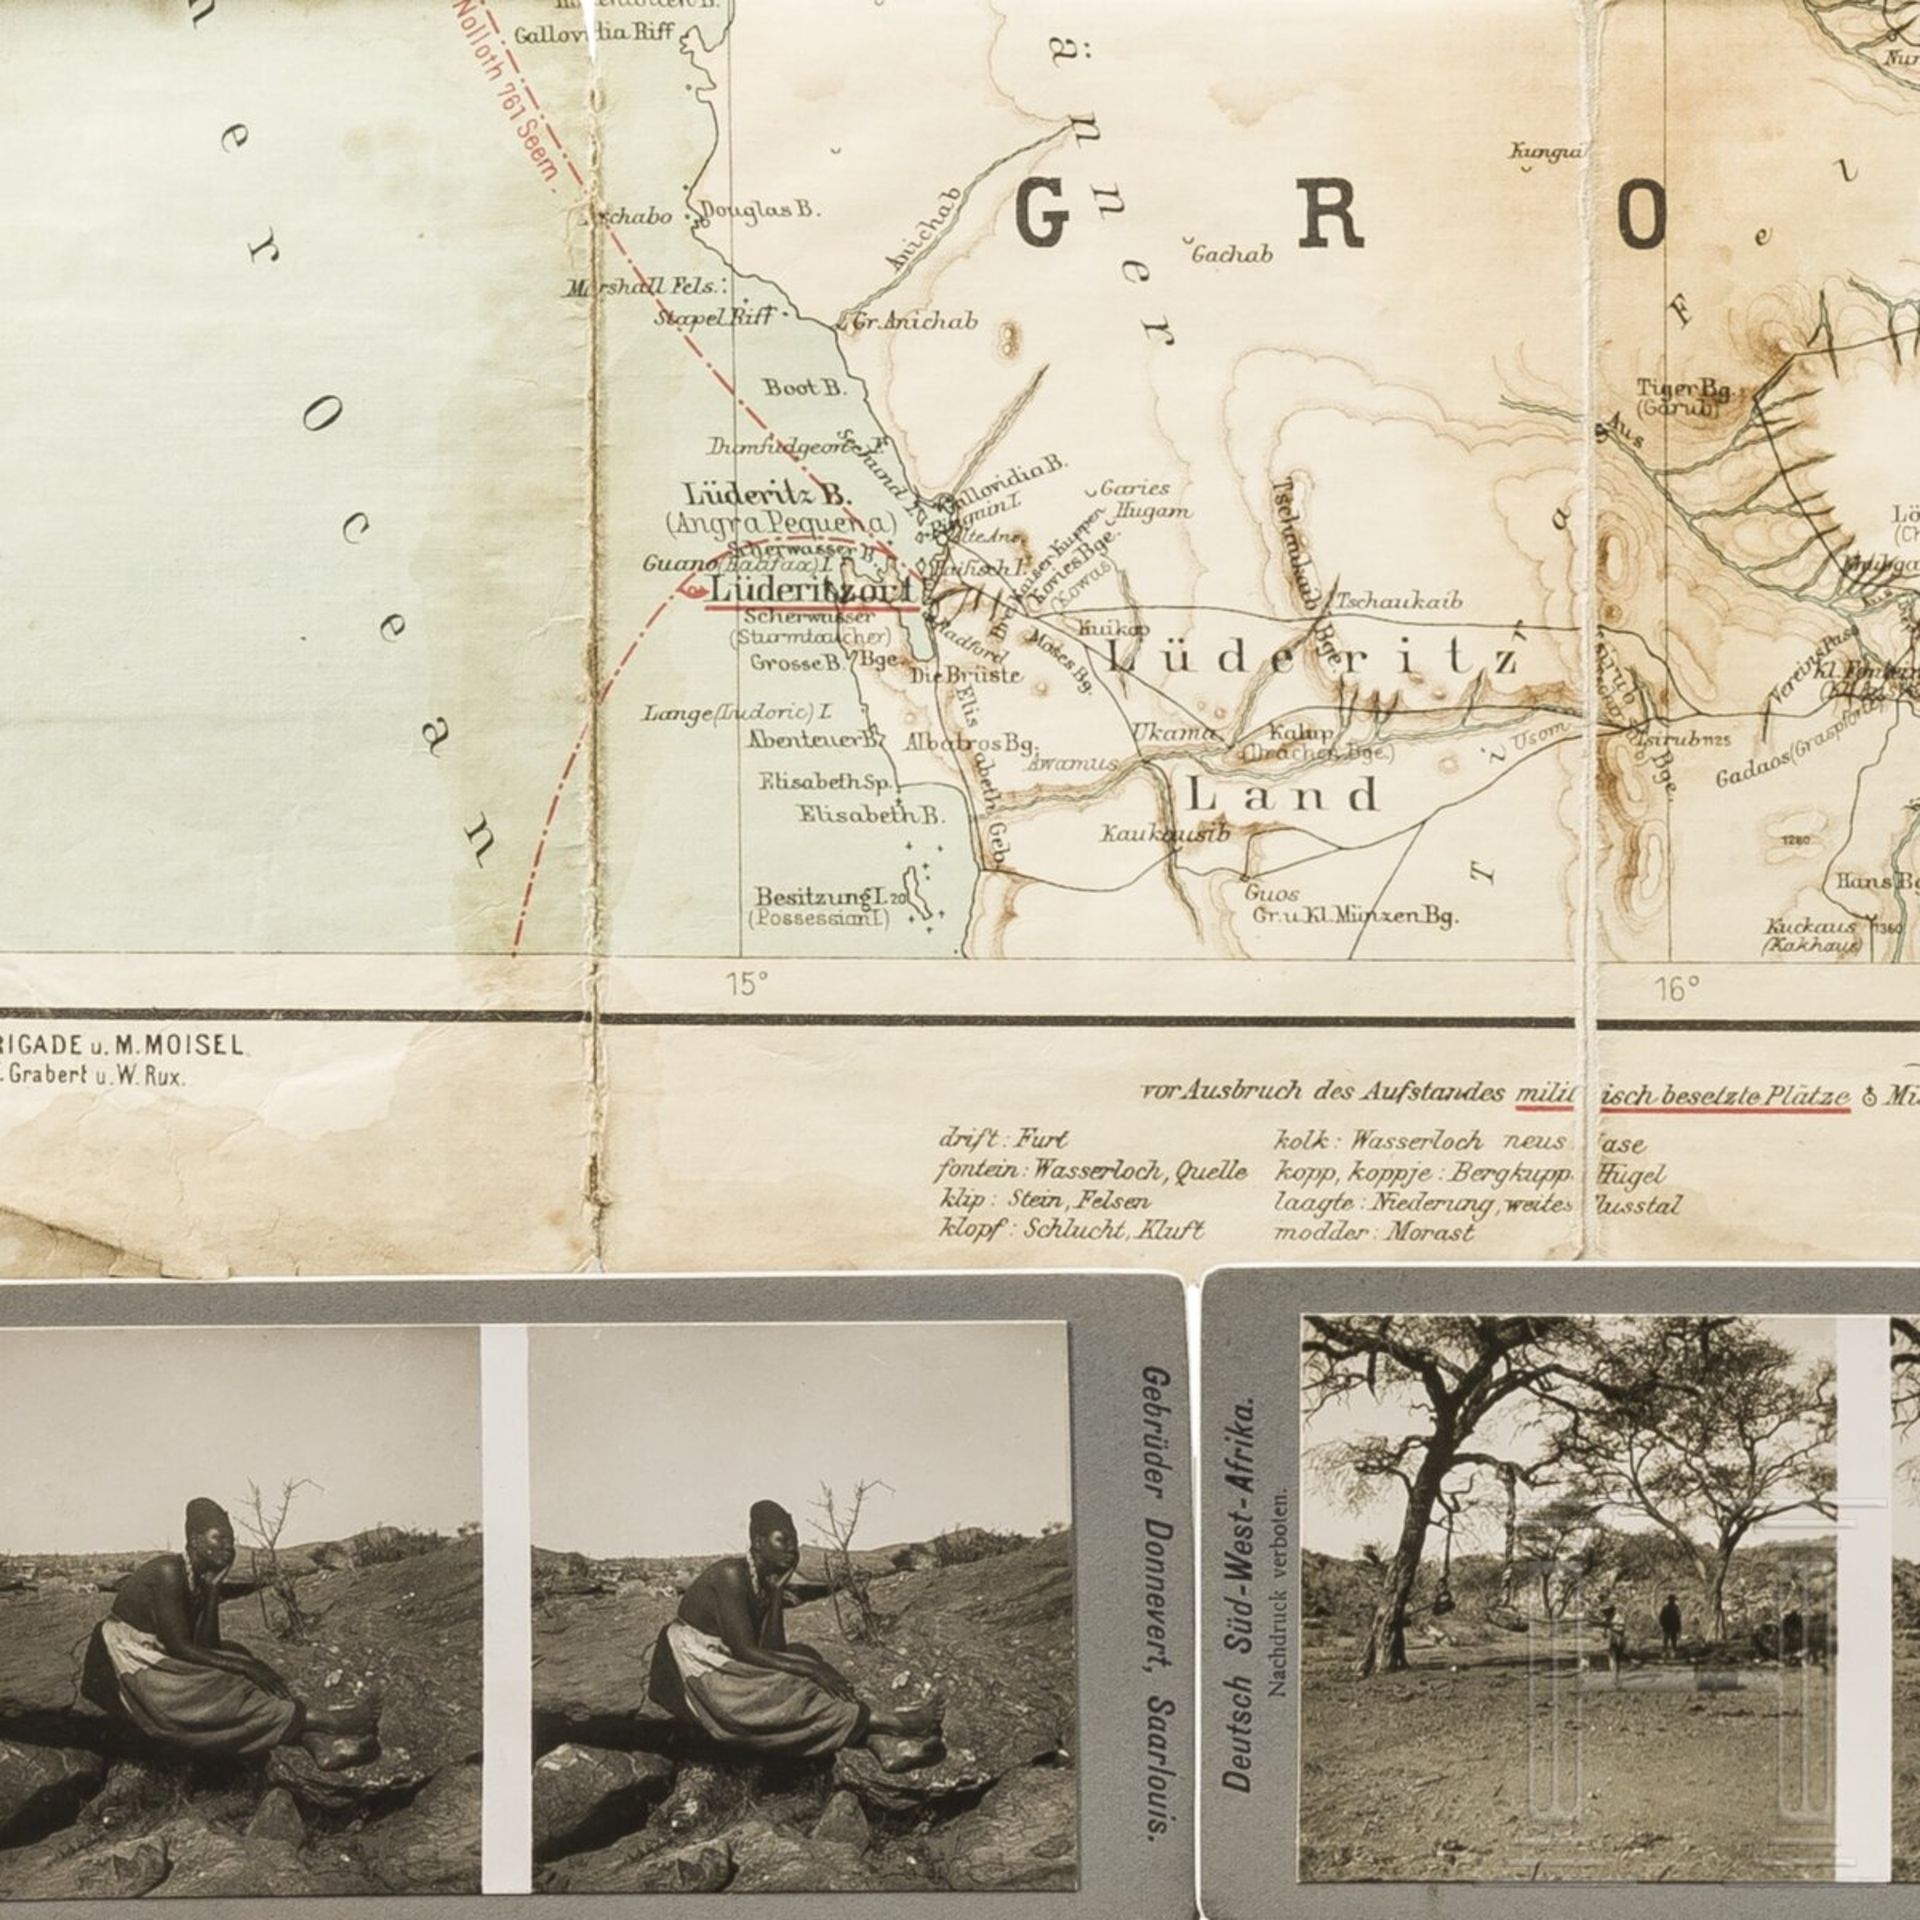 Oberleutnant Plieninger - Berichte und Tagebücher des Funkspruchkommandos in Kamerun 1908 sowie Foto - Image 4 of 4